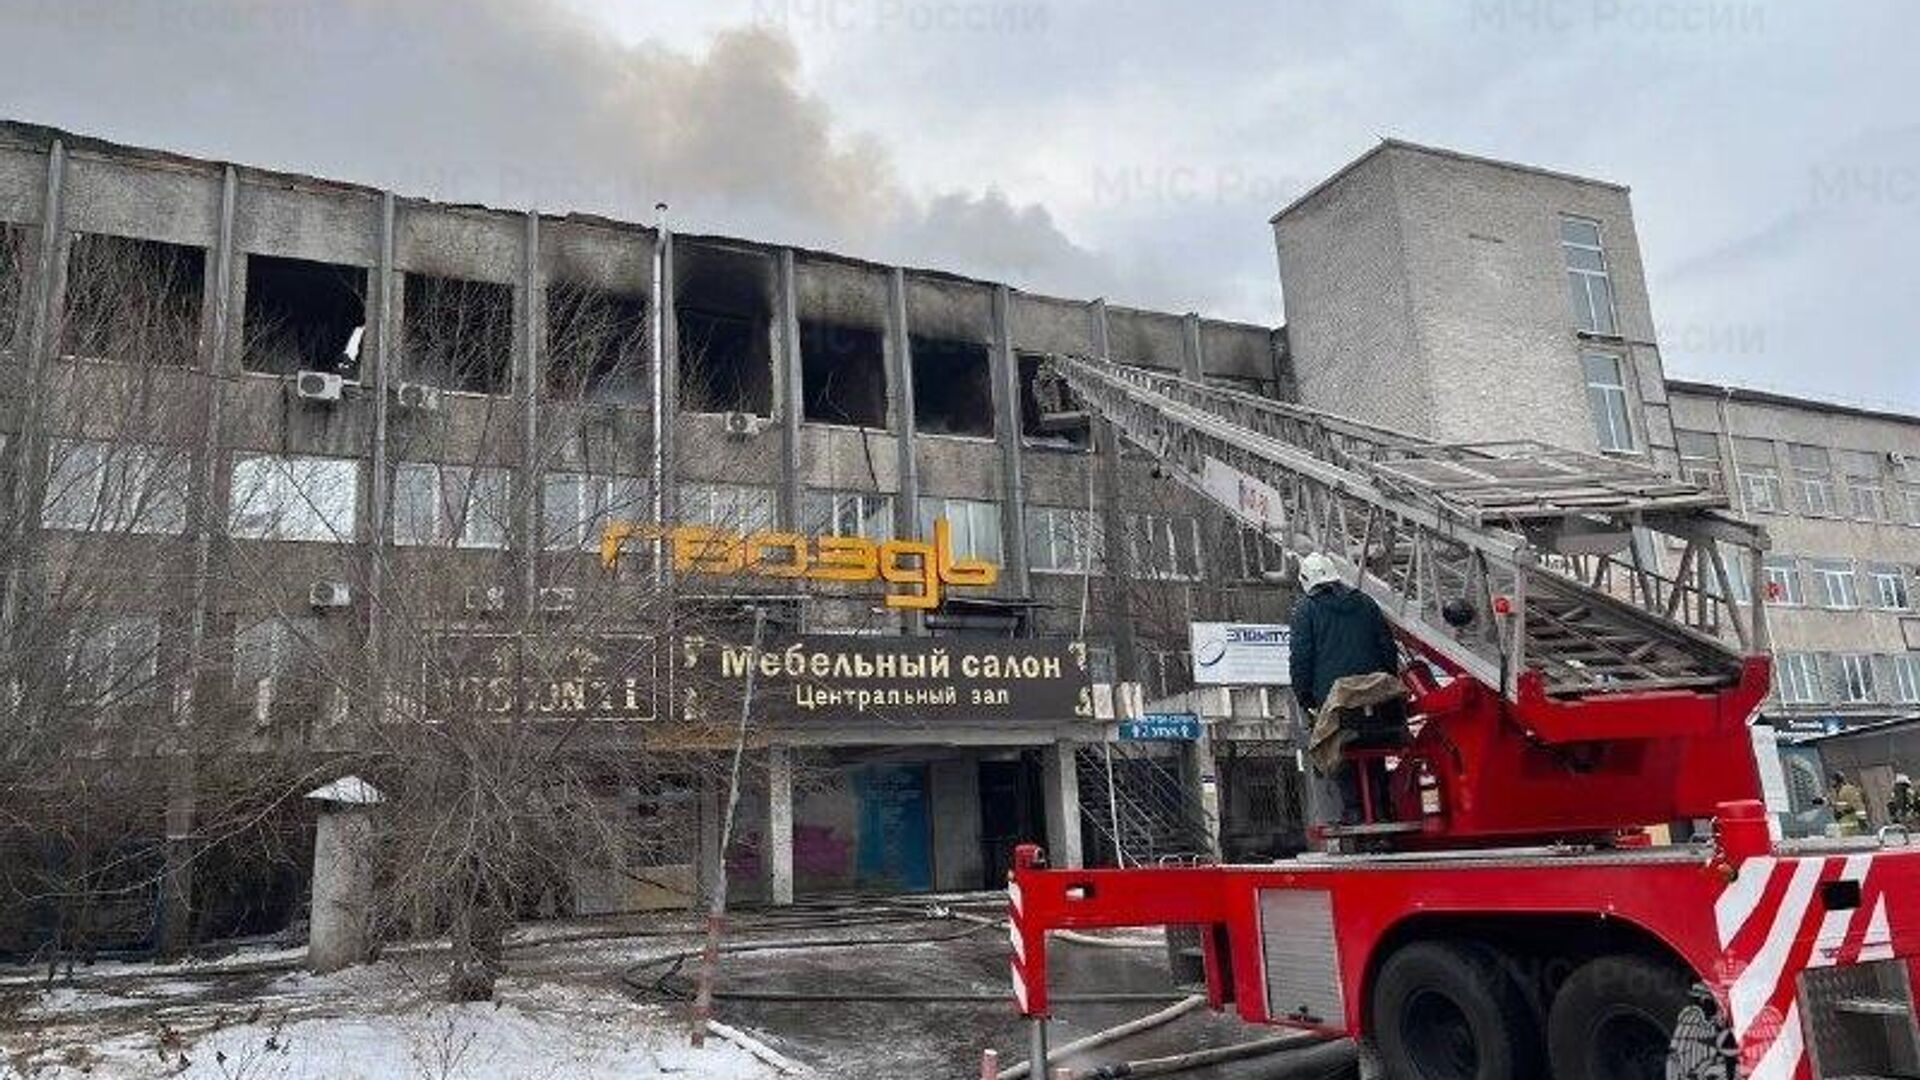 Площадь пожара на рынке в Челябинске увеличилась до тысячи 